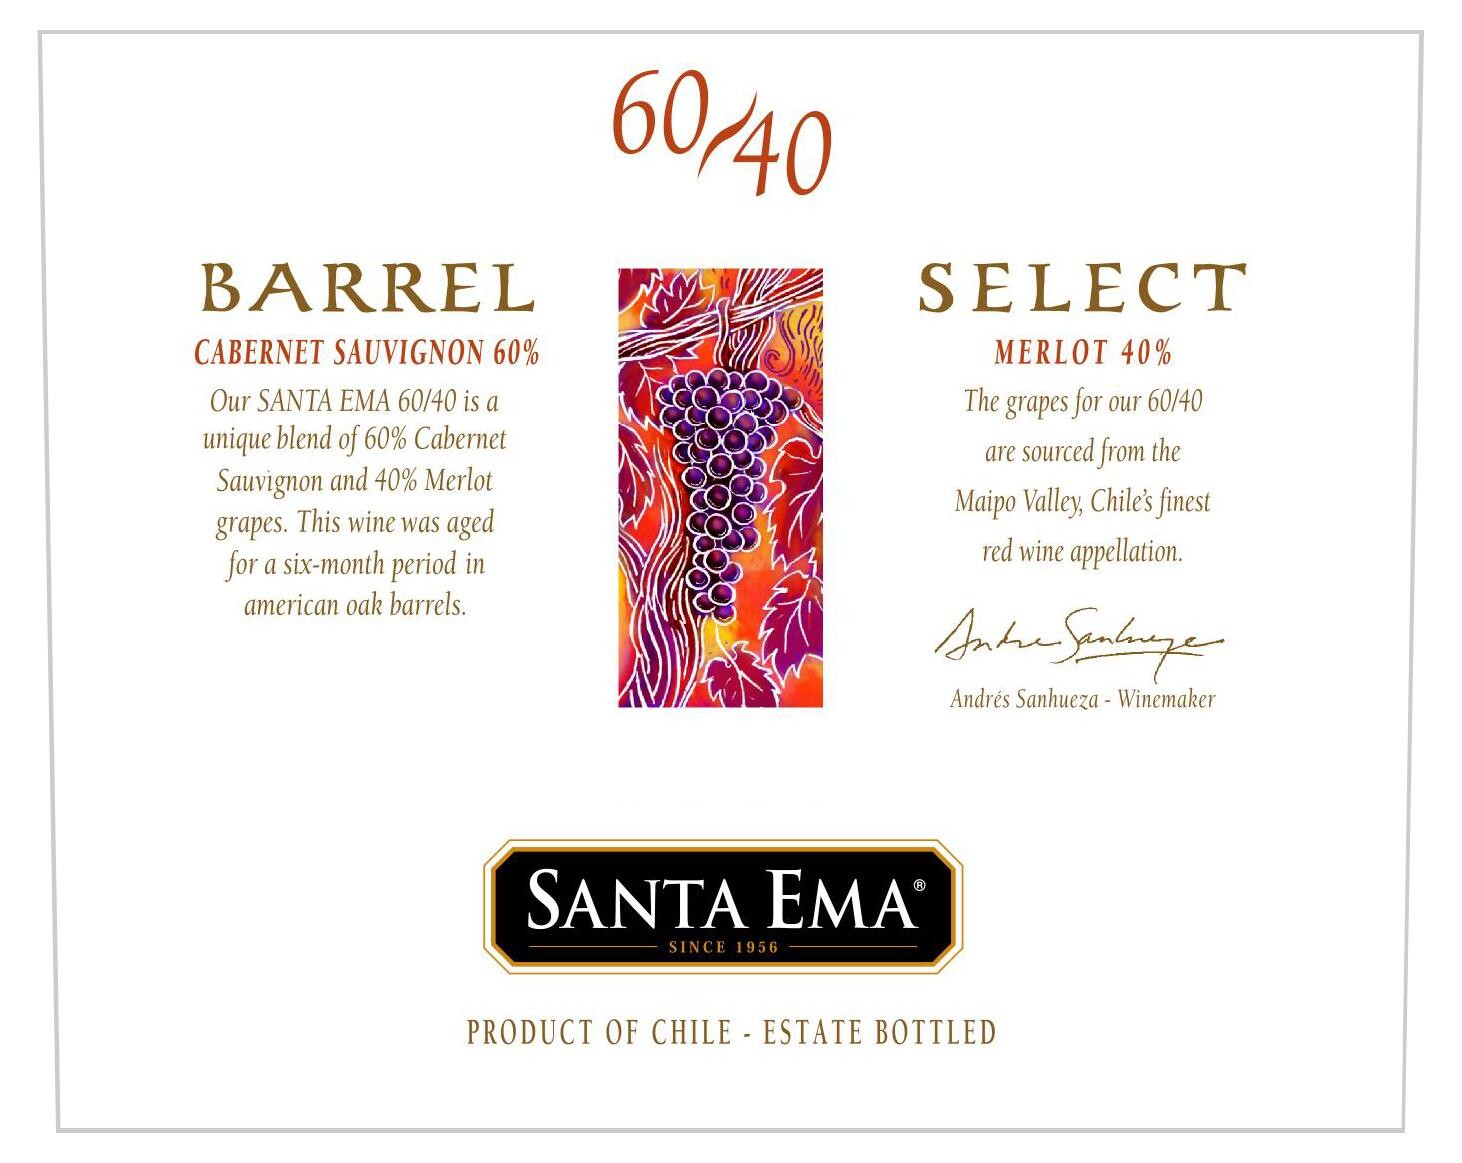 Santa Ema 60/40 Cabernet Sauvignon/Merlot 75cl 2007 Barrel Select - Chilean Wine